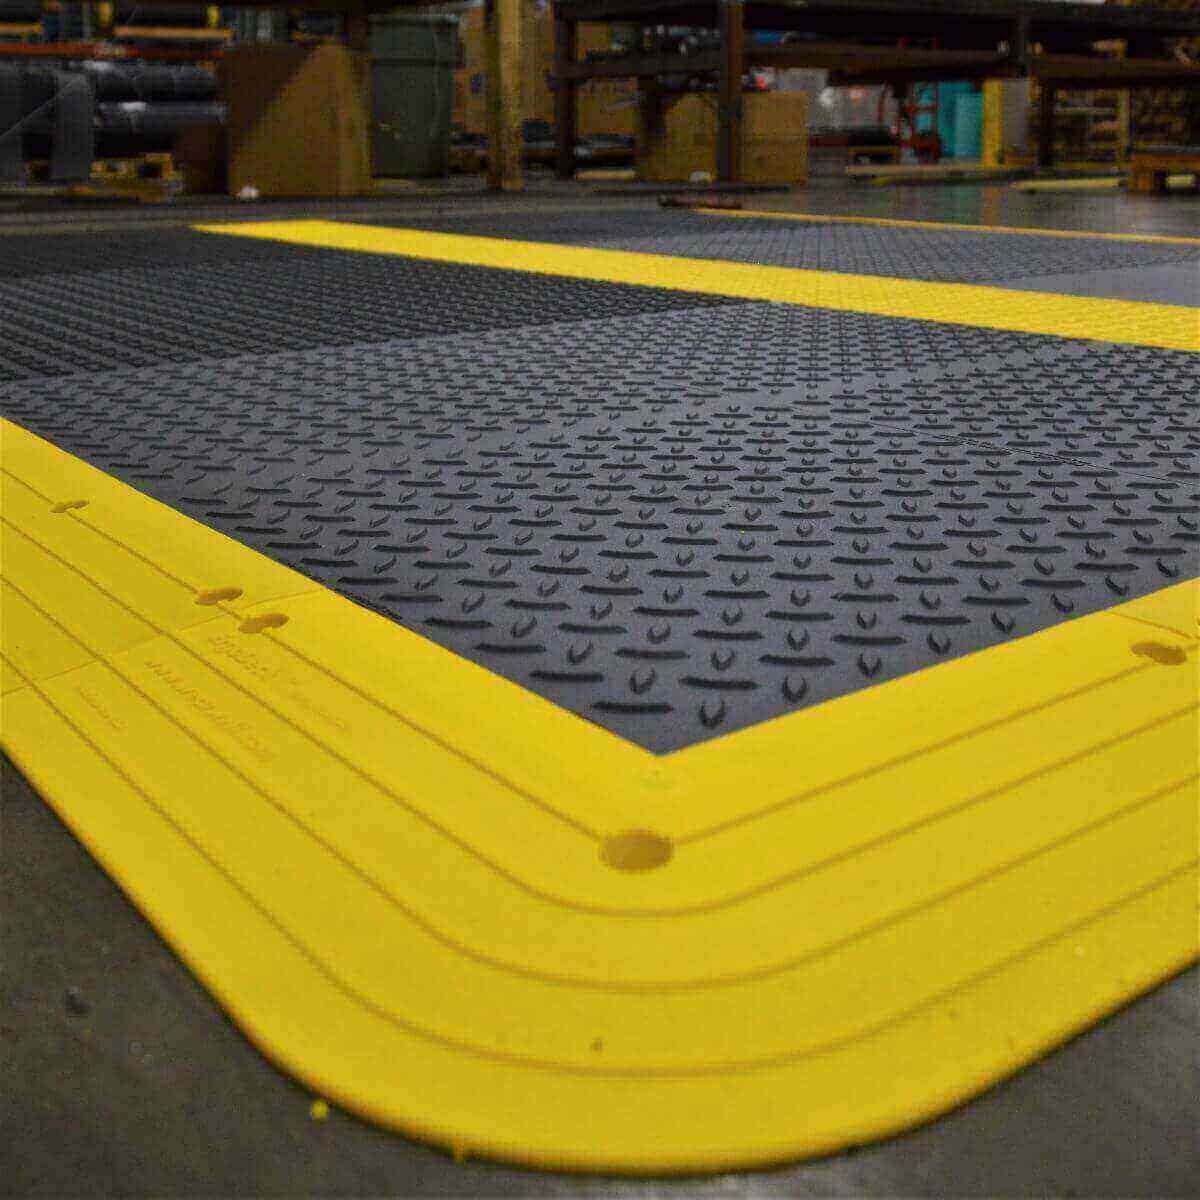 Commercial Floor Mats | Industrial Floor Mats & Matting by Wearwell